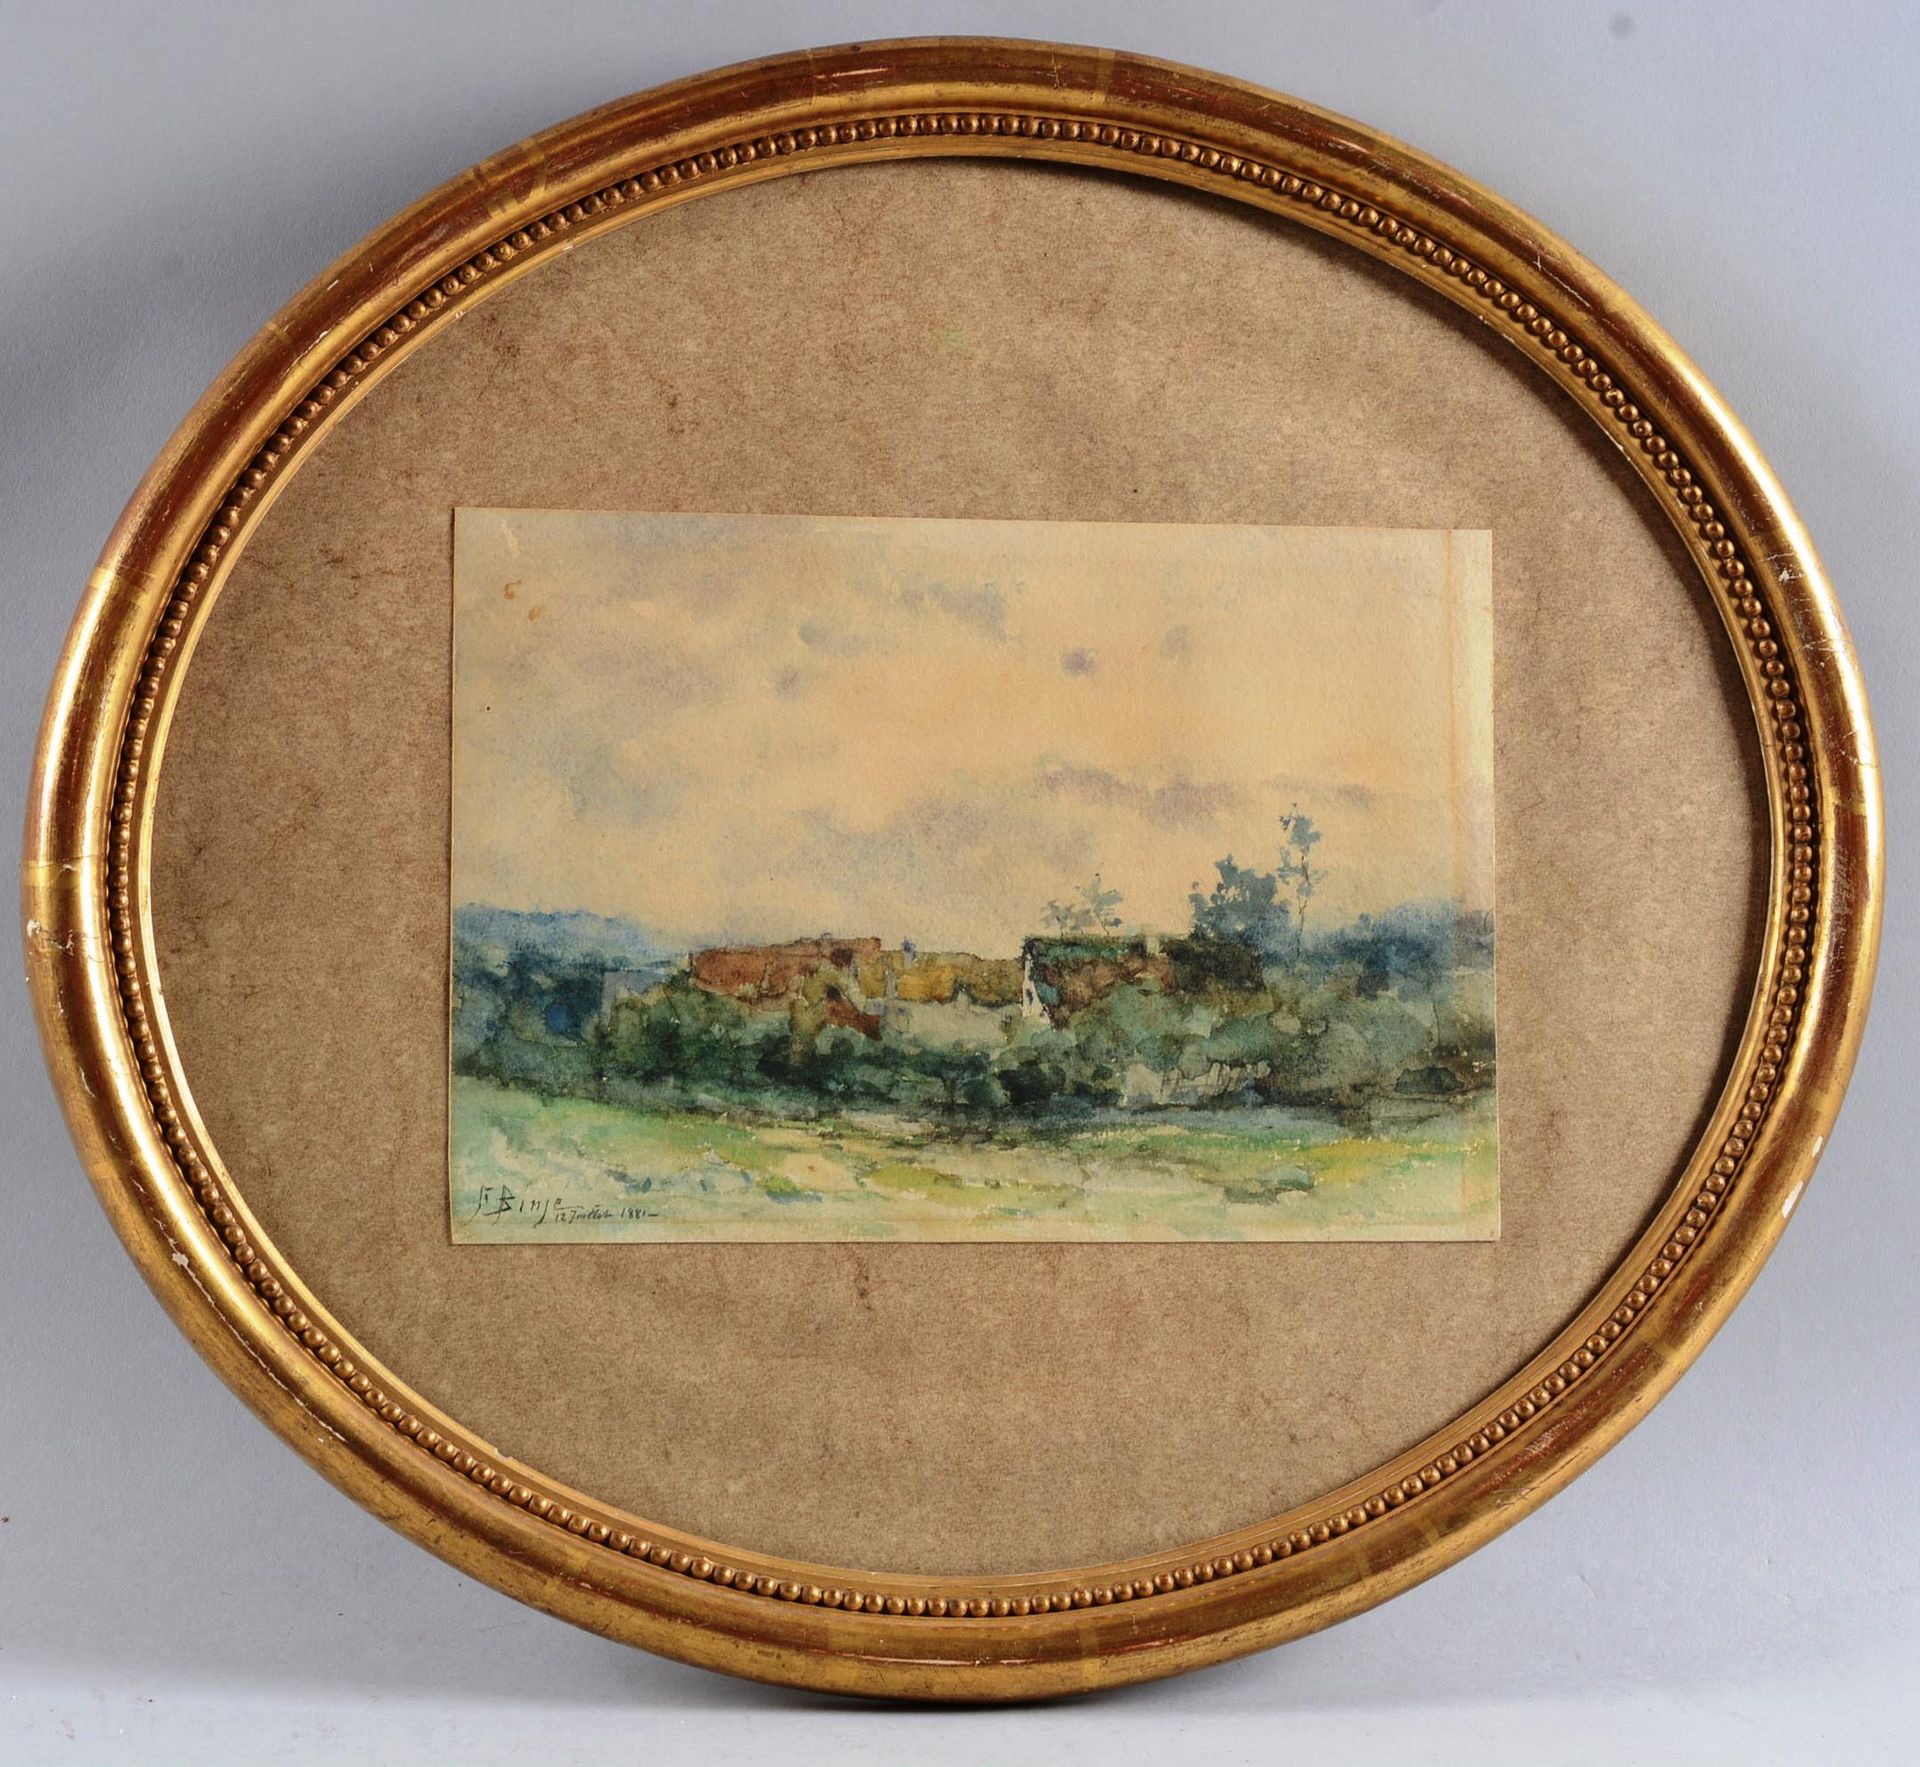 Frantz BINJÉ (1835-1900 弗朗茨-宾杰(1835-1900)

"景观"。

纸上水彩画，左下角有签名，日期为1881年7月12日，装在一&hellip;